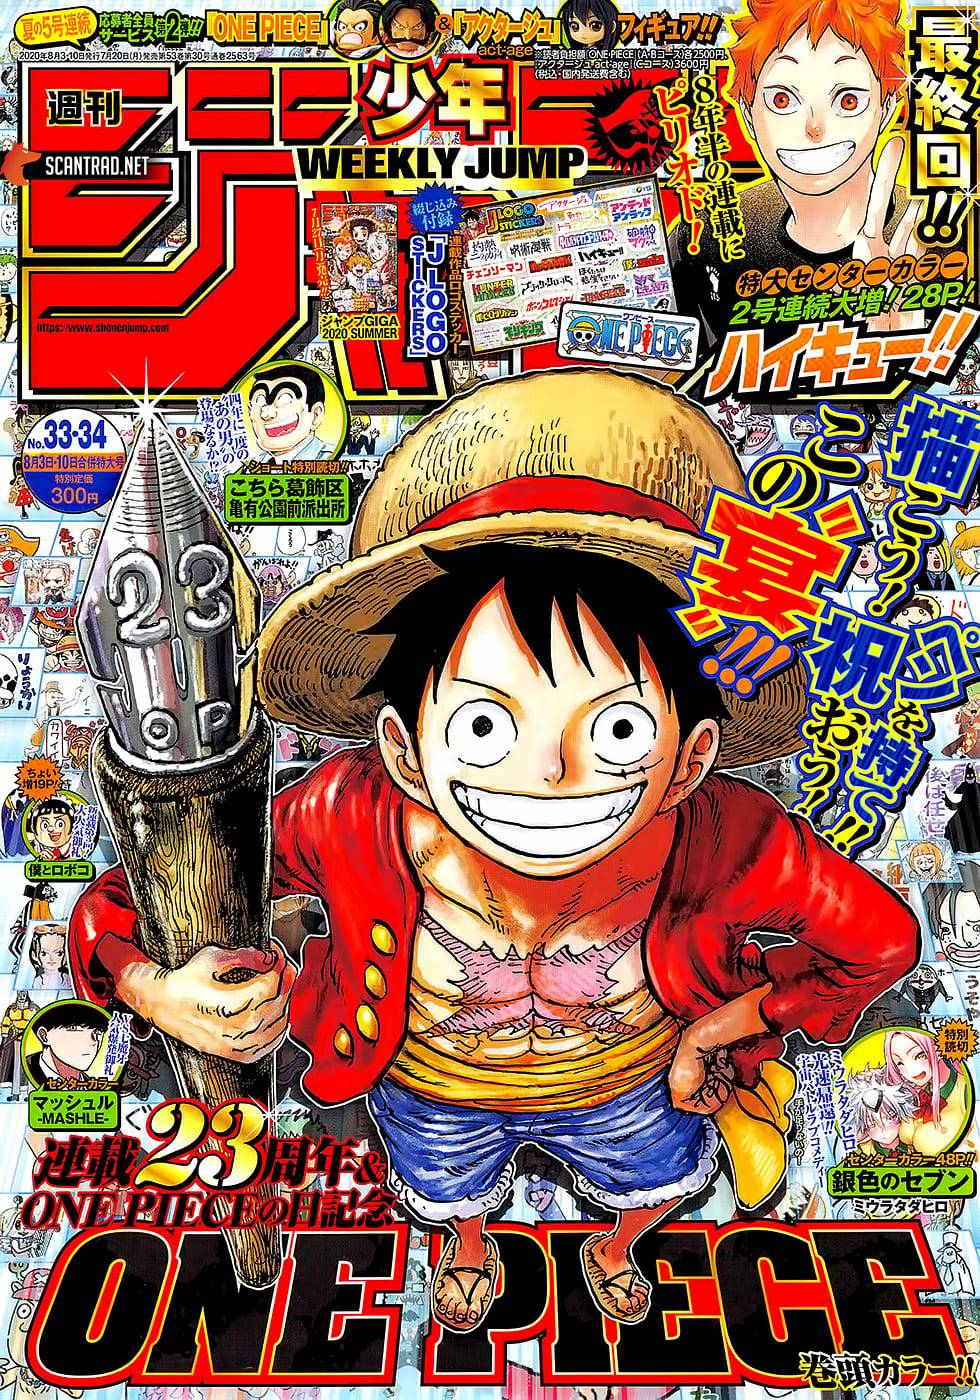 One Piece protagonizará la portada de la Weekly Shonen Jump | SomosKudasai